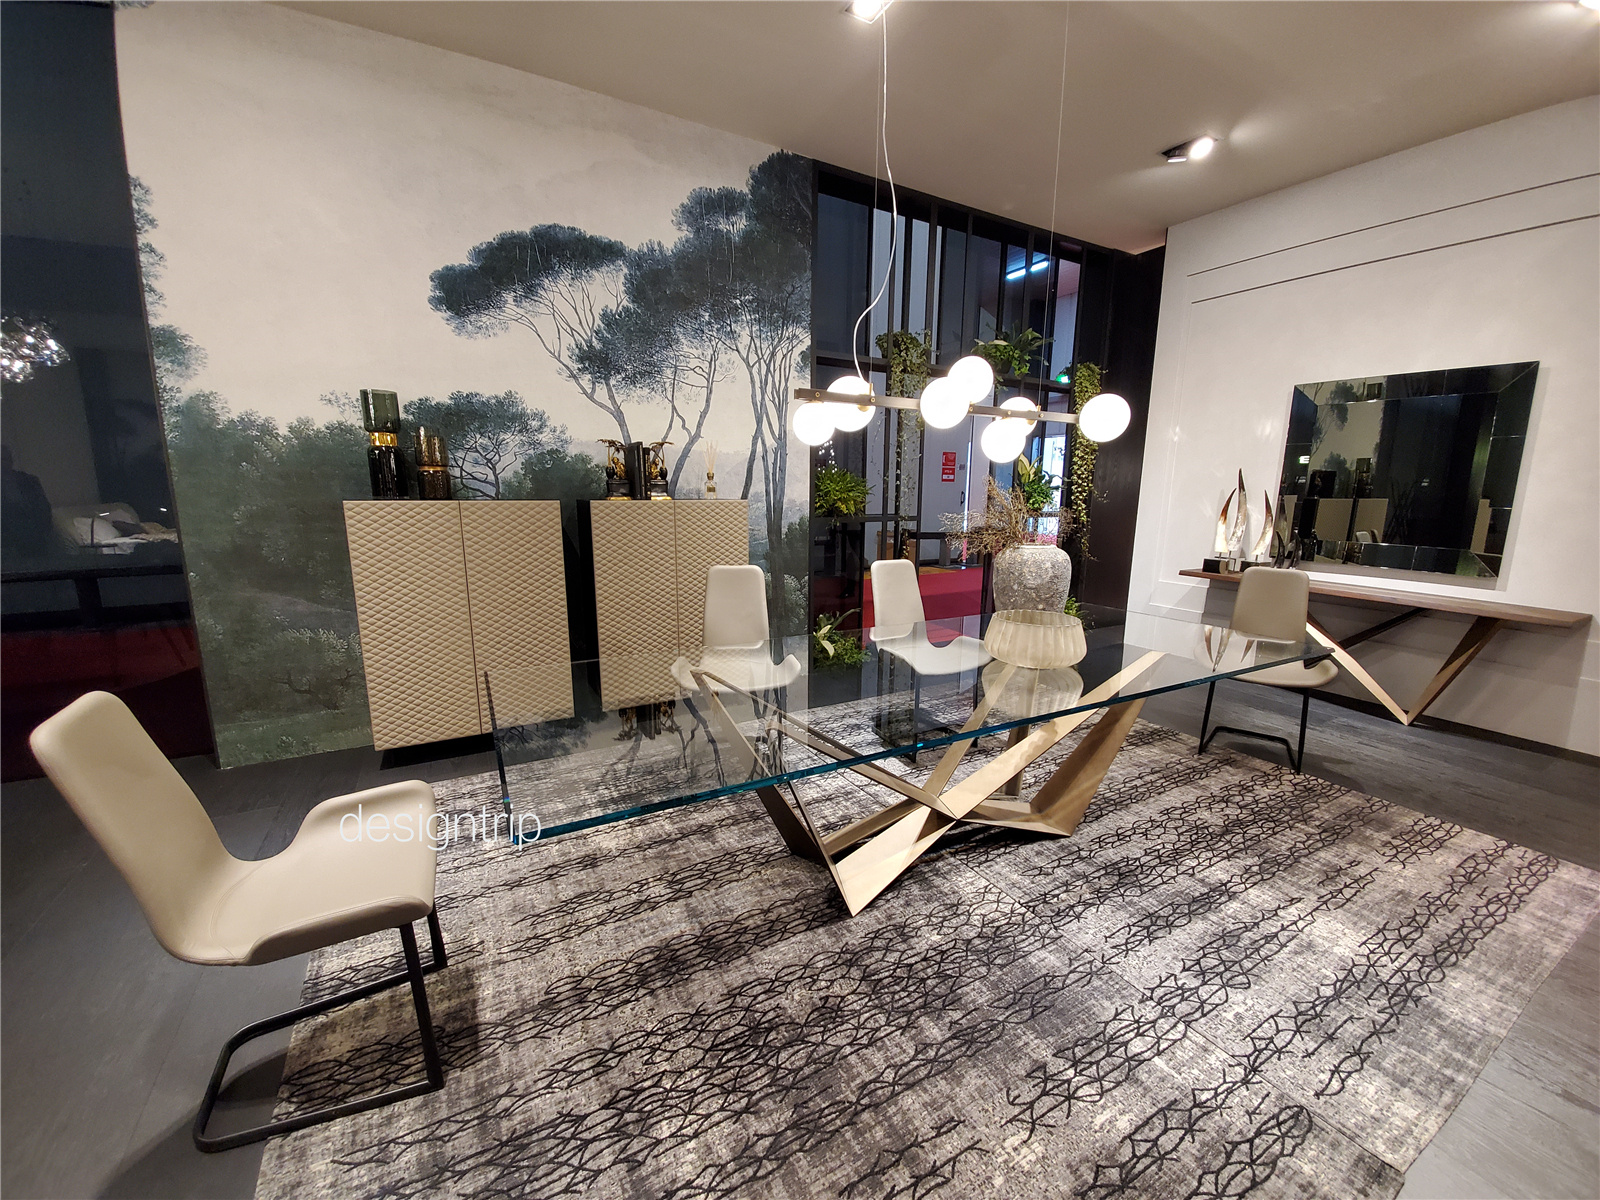 2018米兰家具展Enea展厅 | isern serra-建E网设计案例